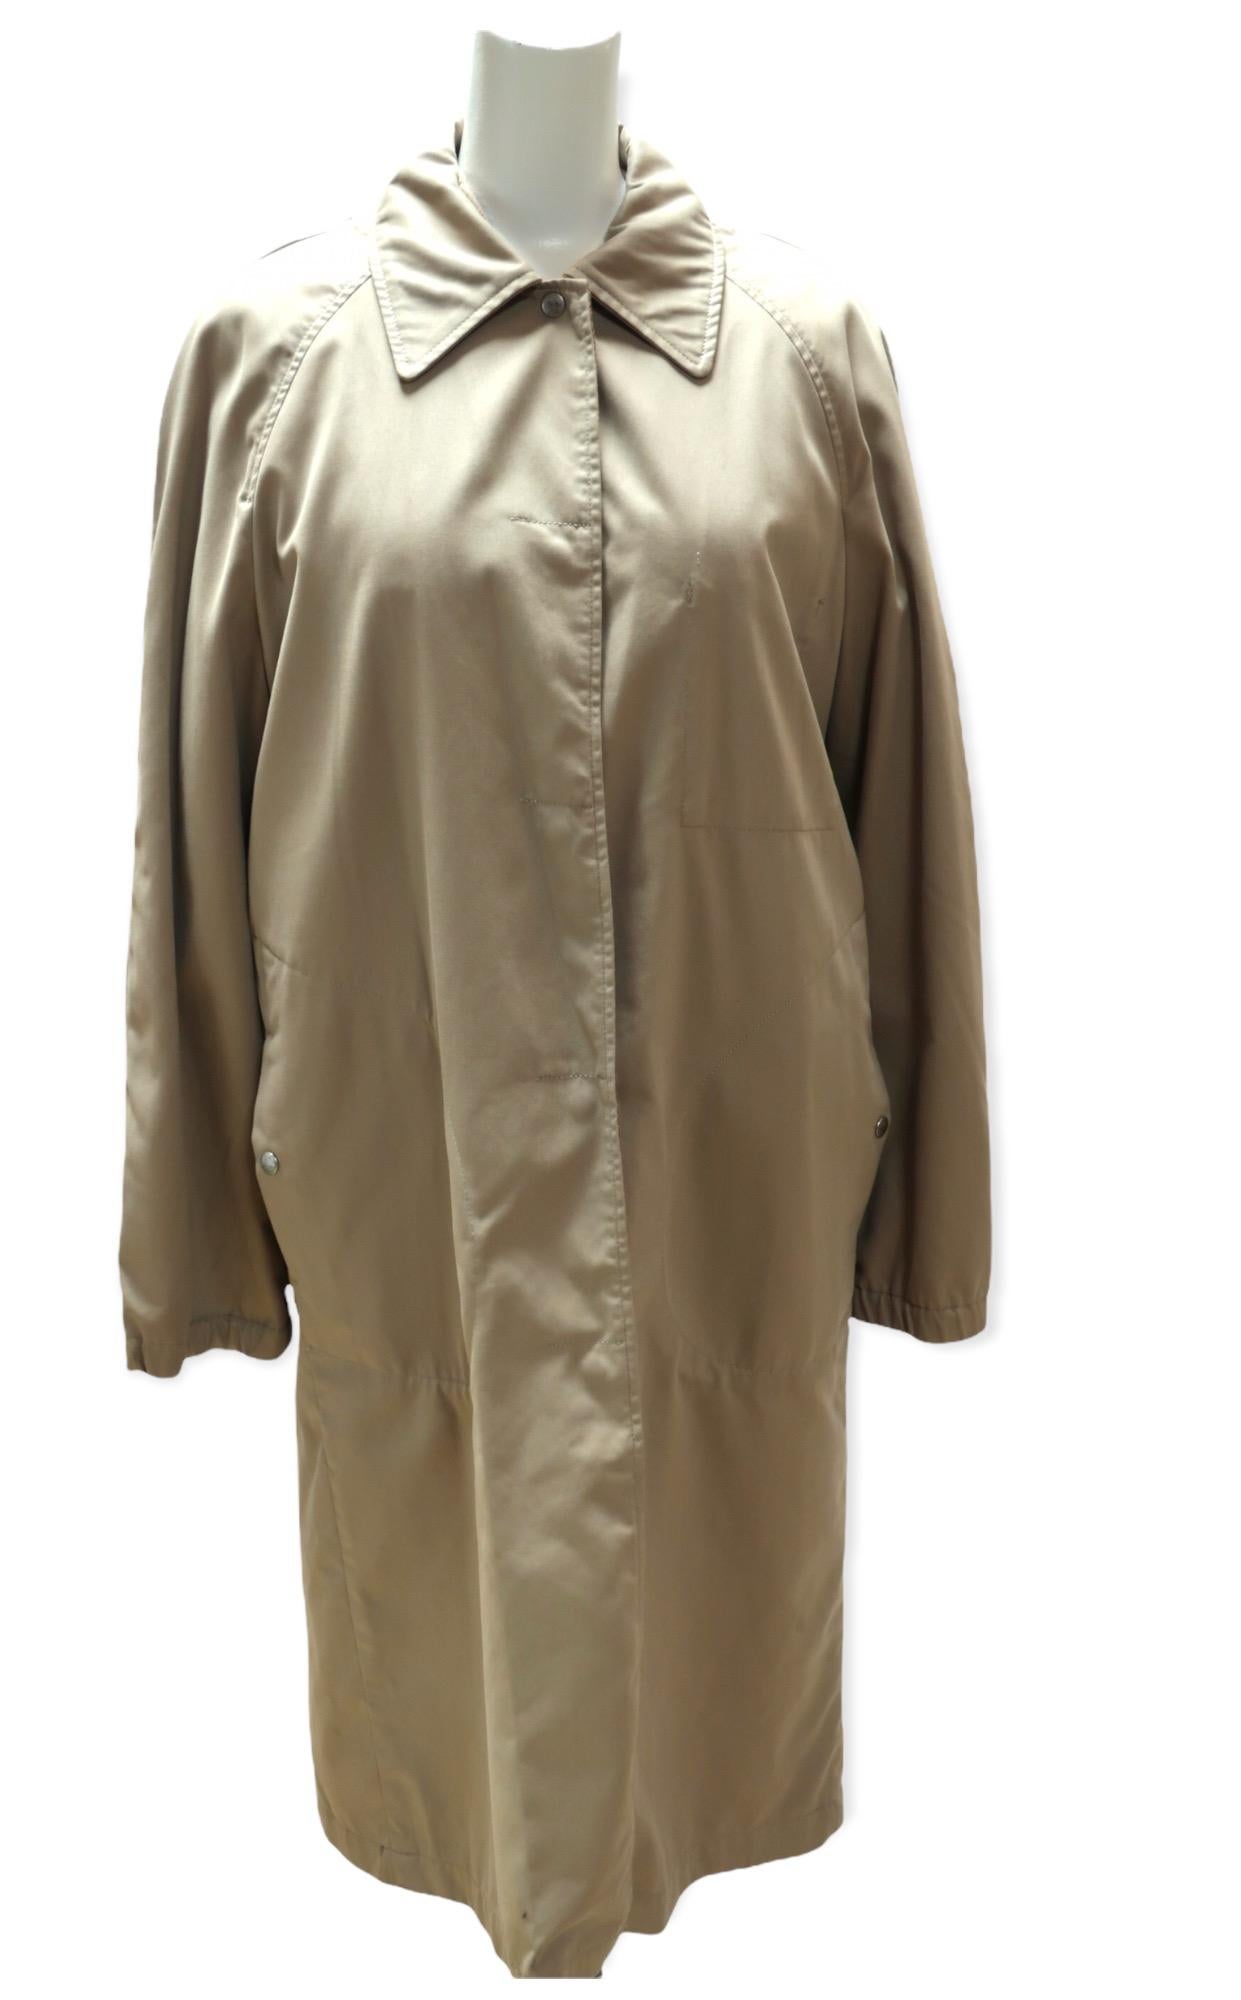 Dieser lange Mantel stammt von Maison Martin Margiela. Die innere, herausnehmbare Schicht ist weich und leicht und fühlt sich an wie eine Decke. Sie hat eine lange Vorderseite mit Reißverschluss. Die äußere Schicht im Trenchcoat-Stil isoliert Sie